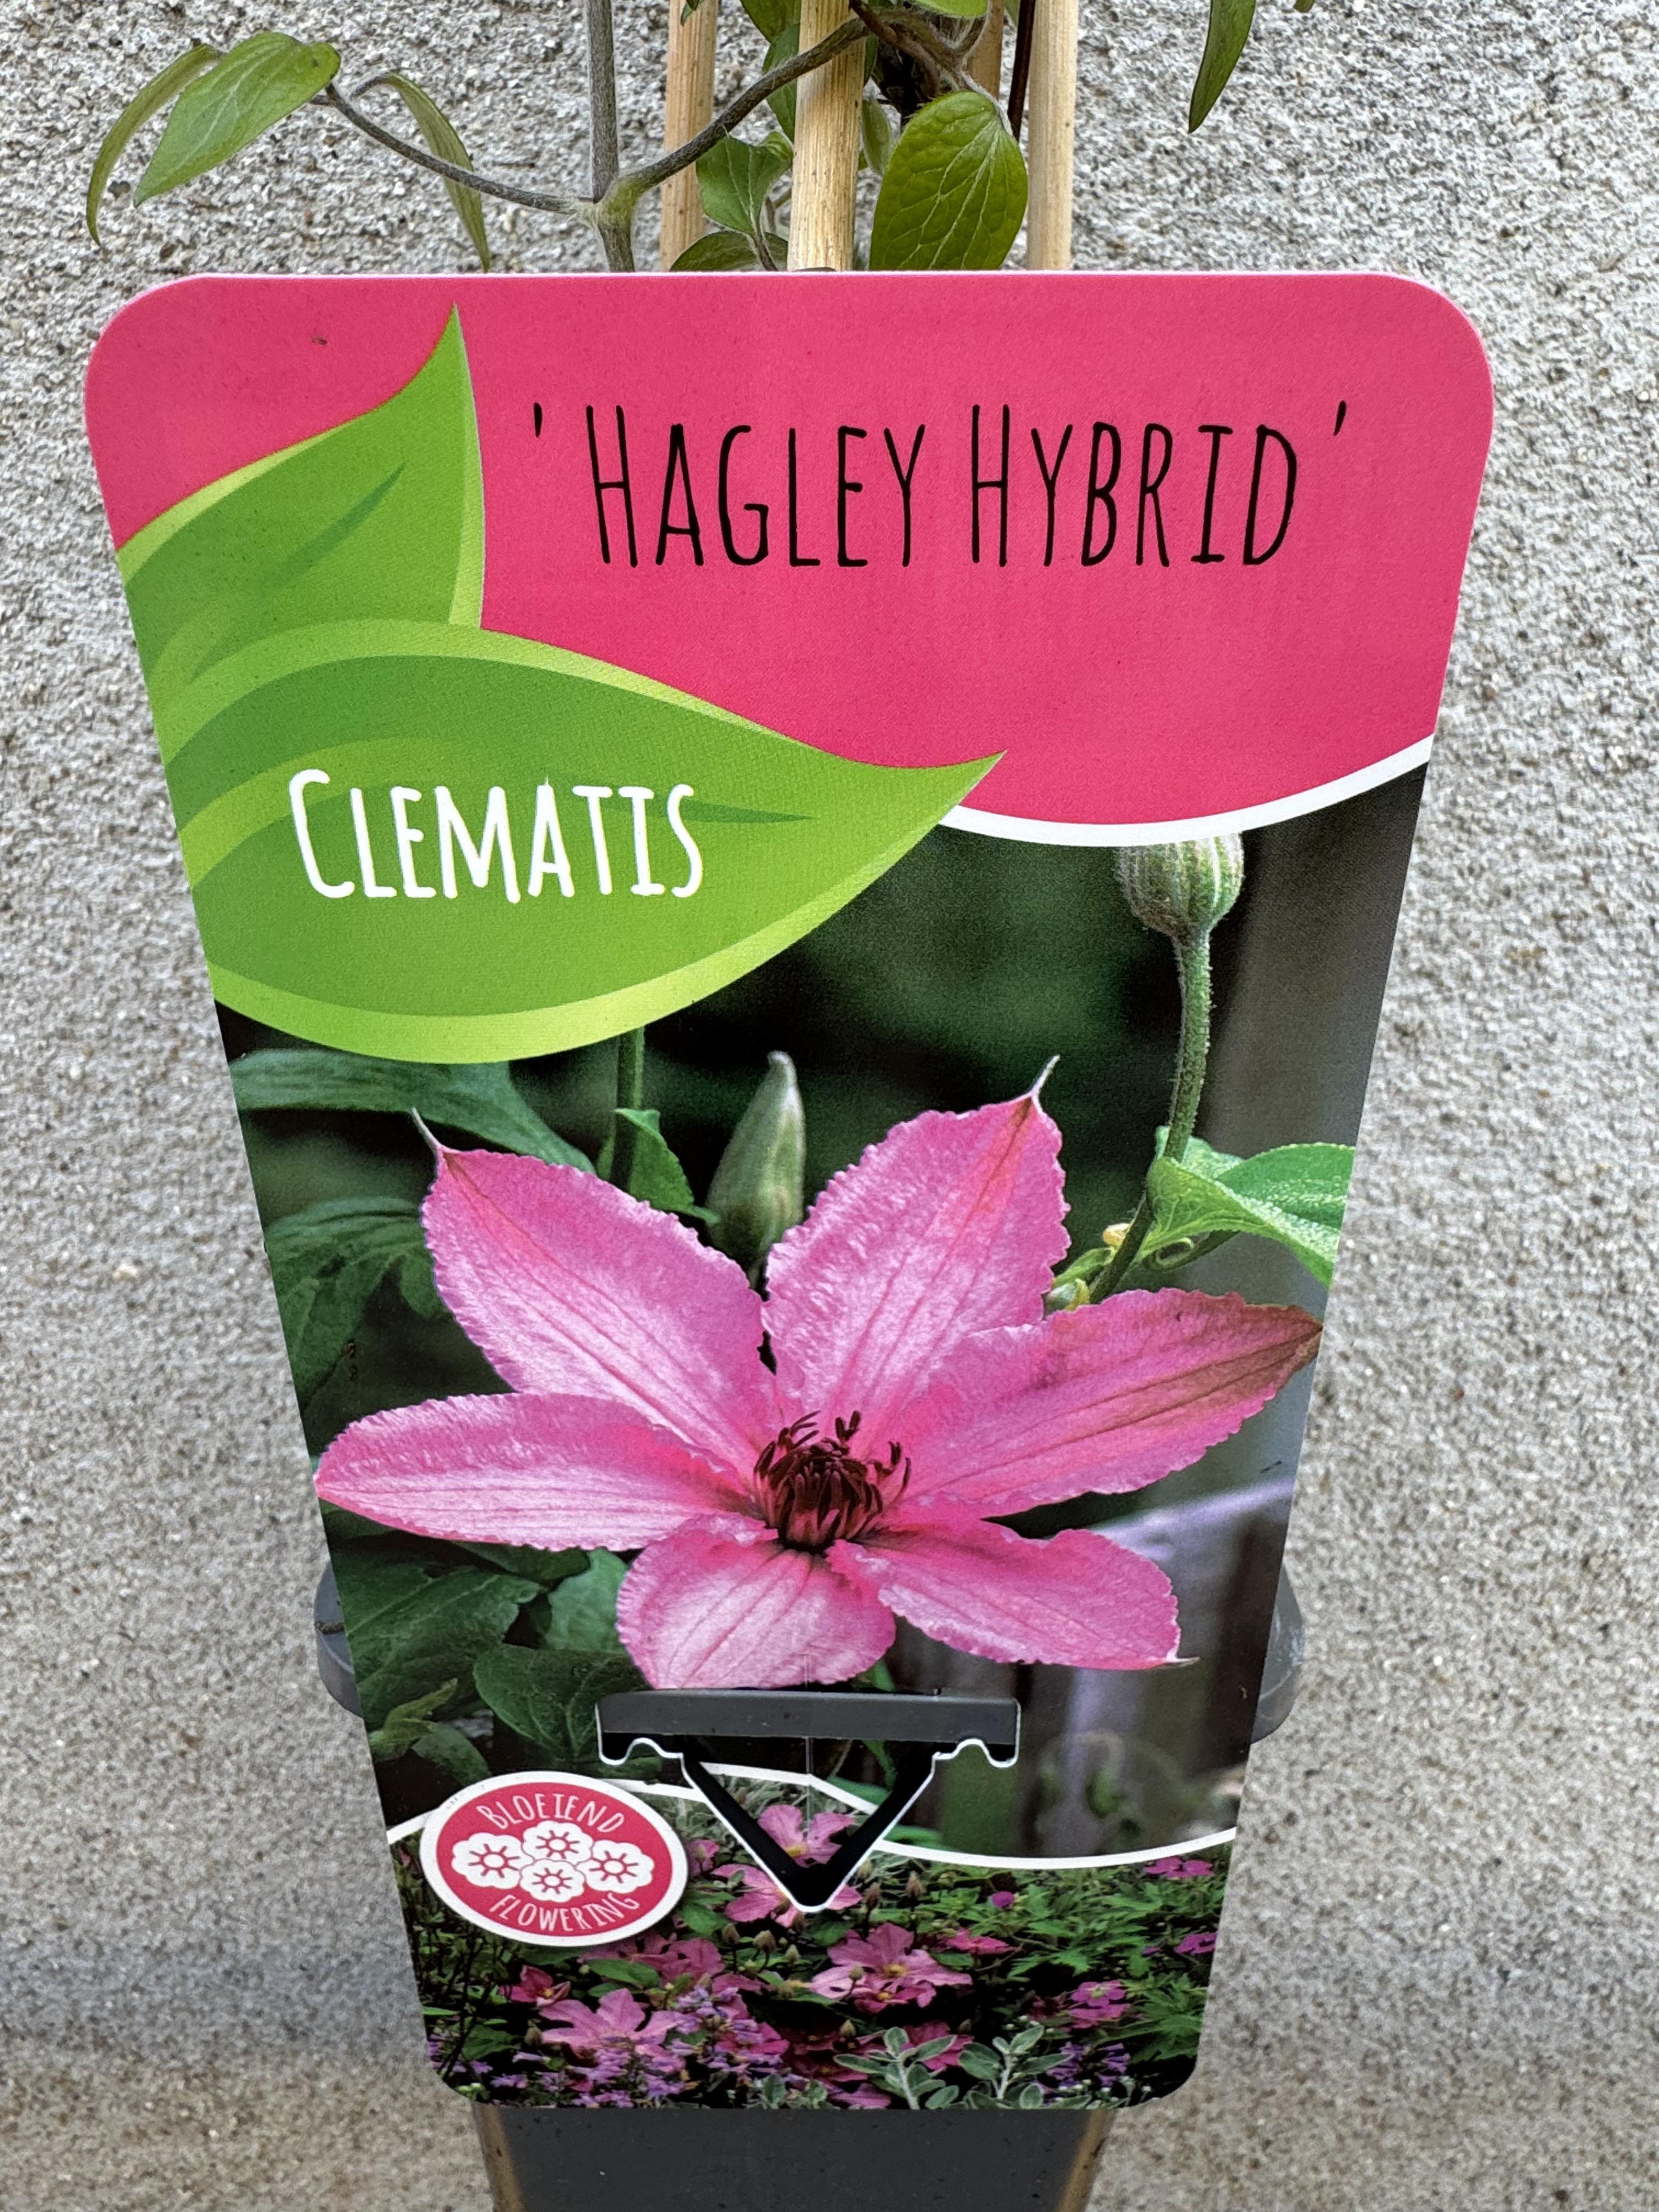 Clematis Hagley Hybrid